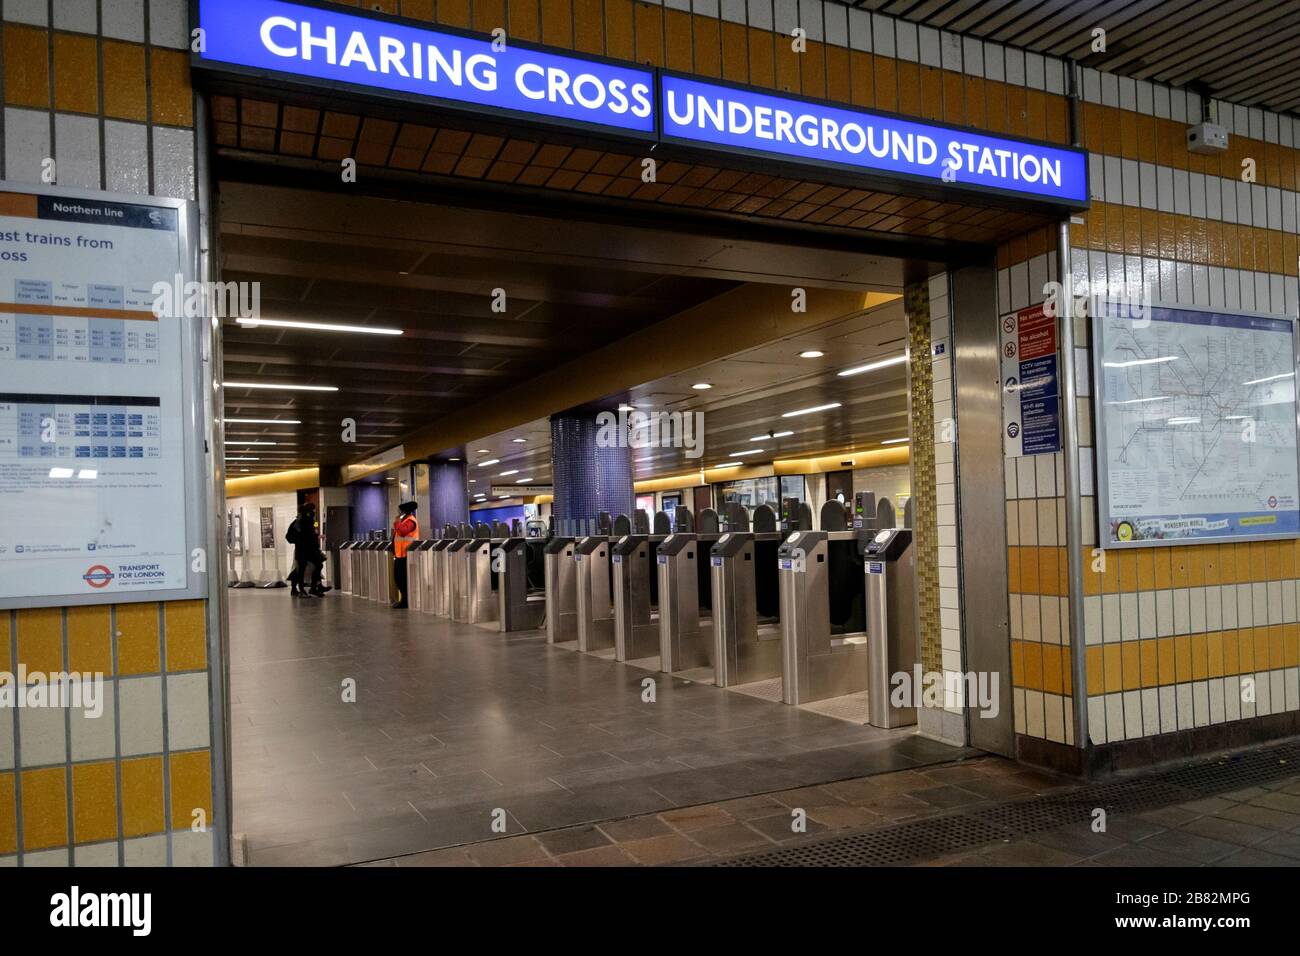 Londres, Reino Unido. 19 de marzo de 2020. Numerosas estaciones de metro de la red de transporte de Londres se cerrarán a medida que se impongan restricciones operativas durante la pandemia de Covid-19. Foto de stock